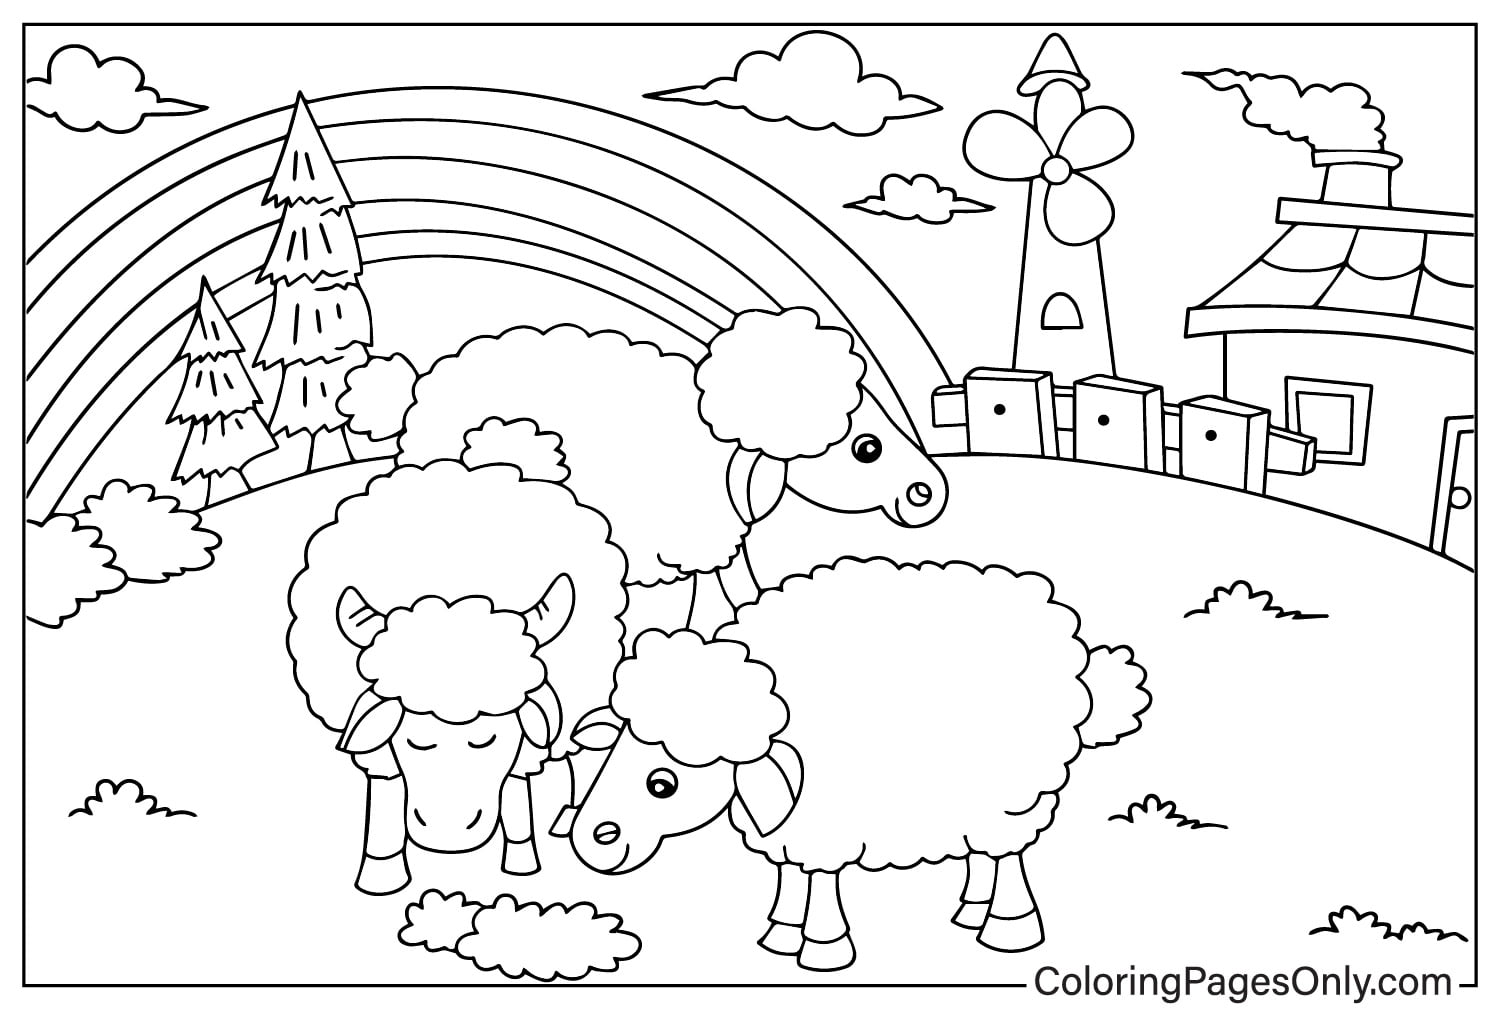 Des moutons paissant à la ferme de Farm Animal